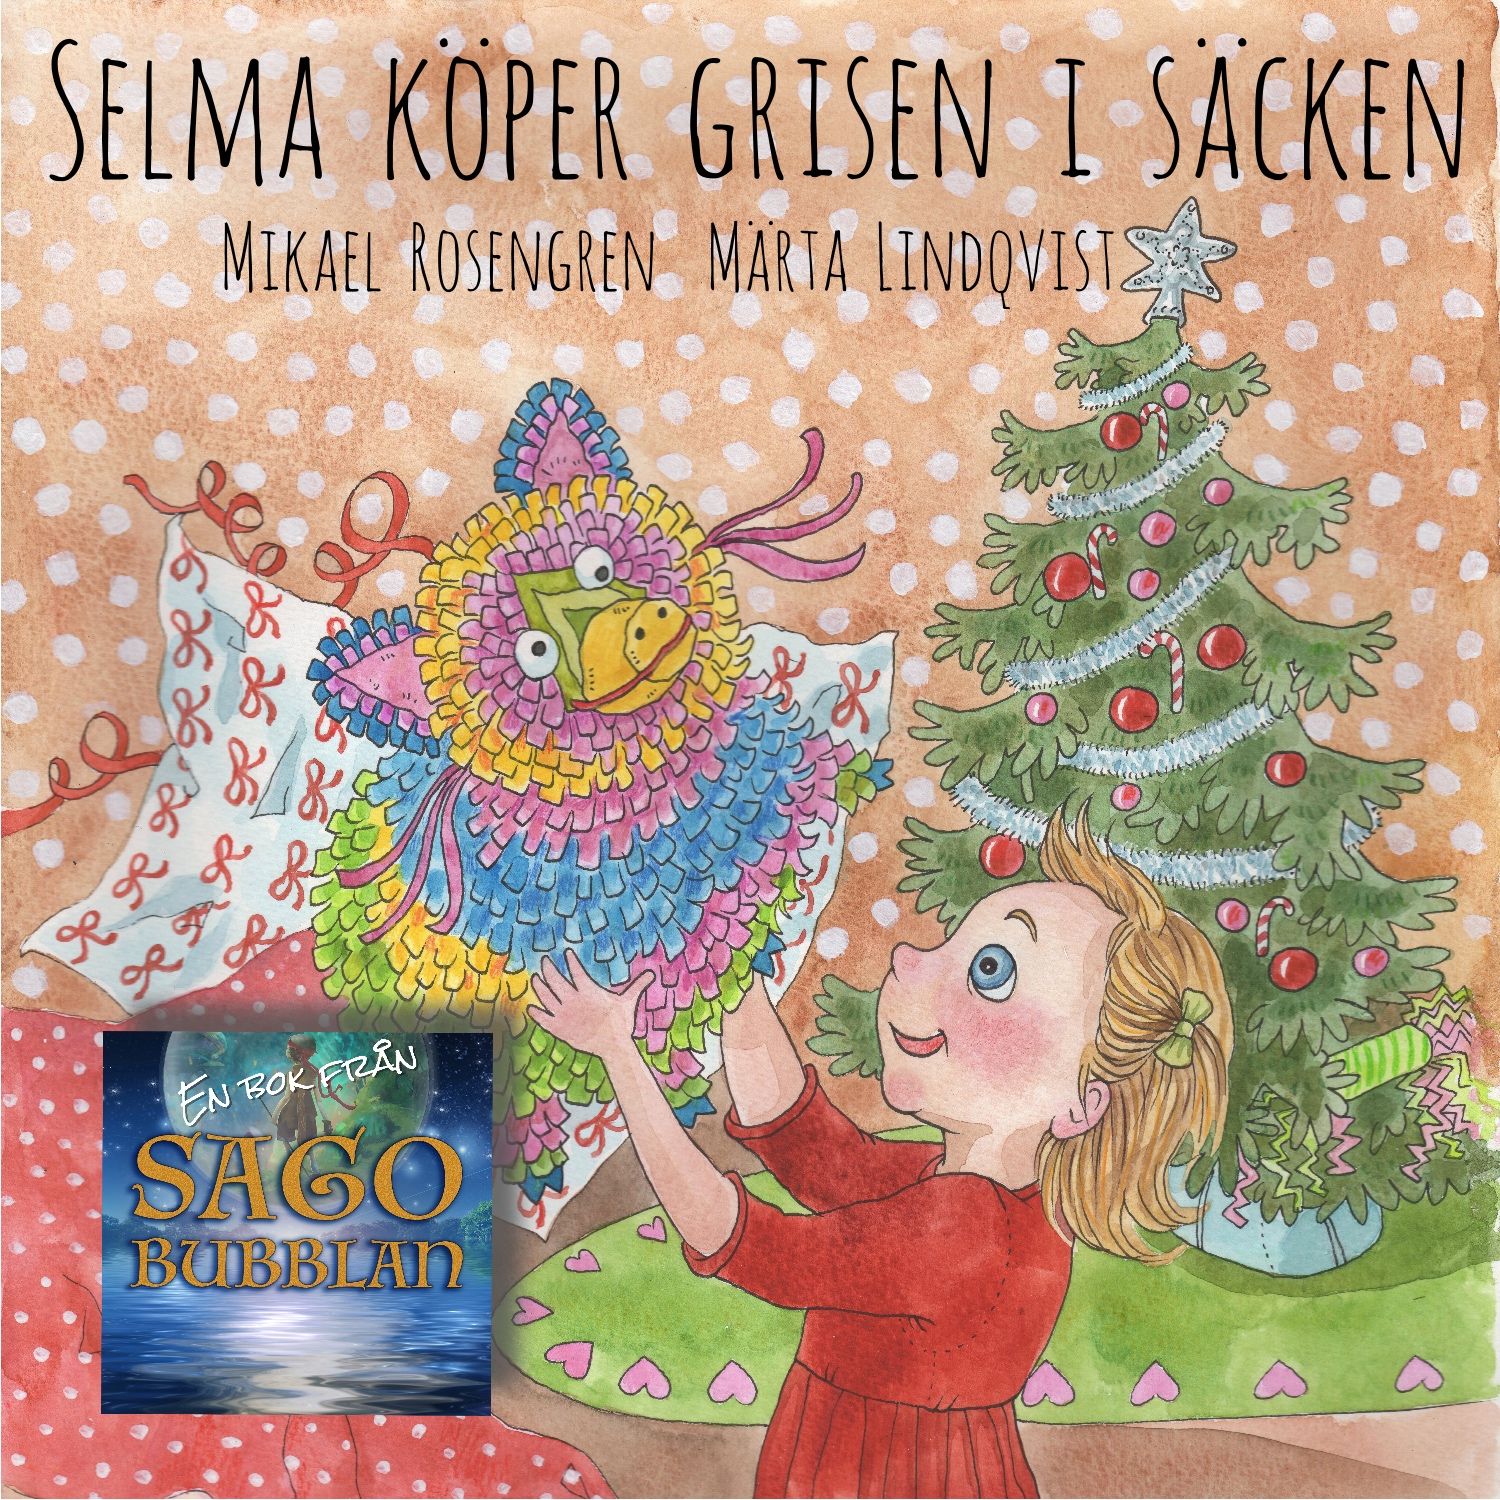 Selma köper grisen i säcken, audiobook by Mikael Rosengren